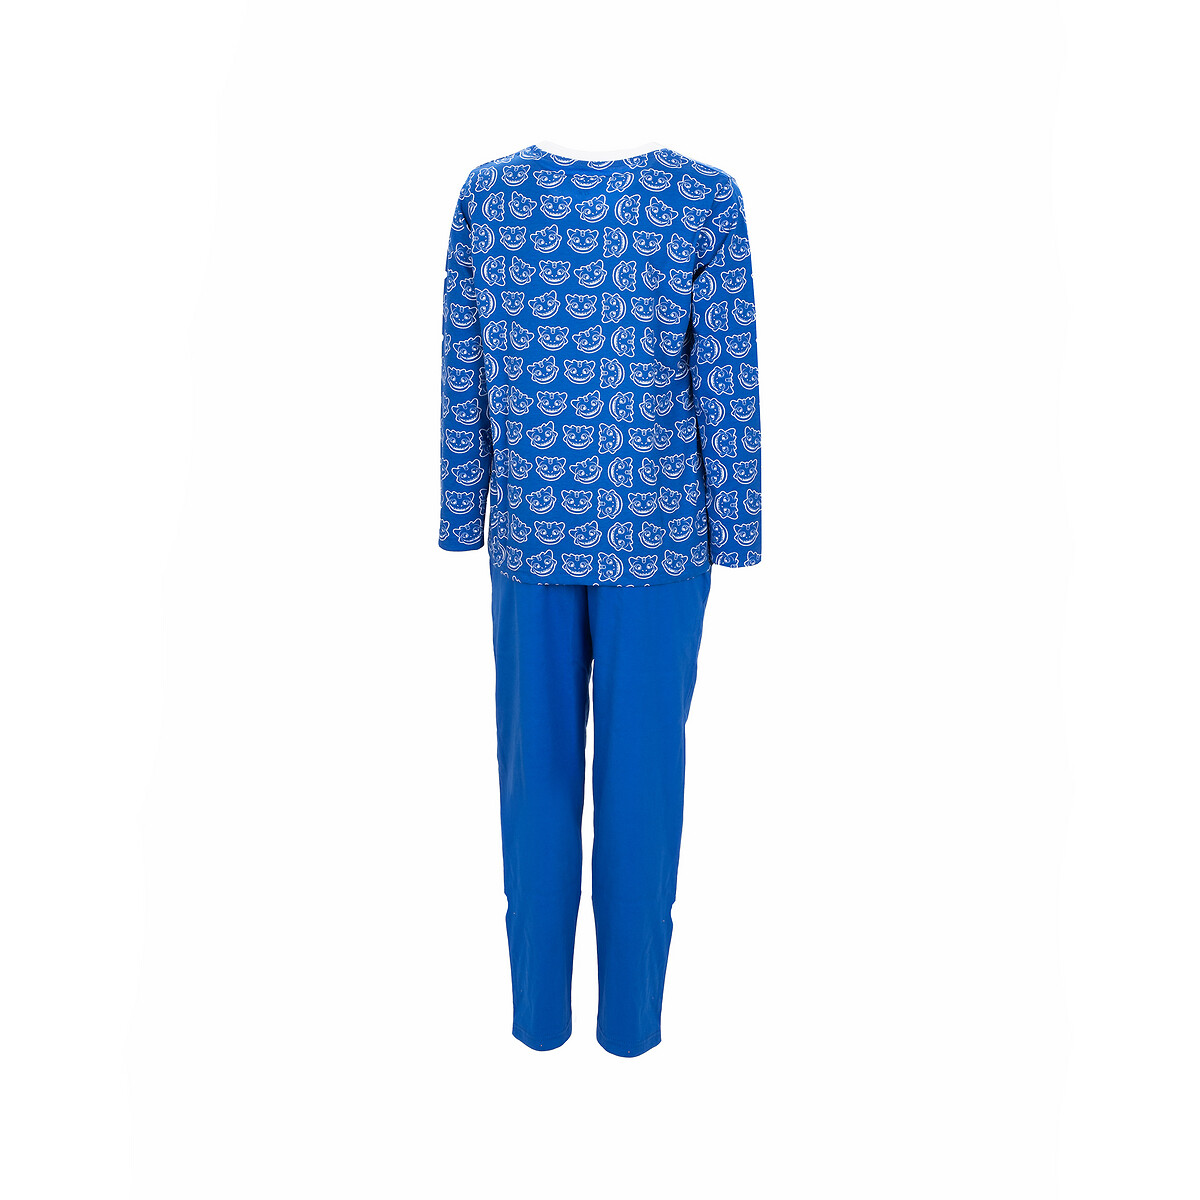 Pijama para criança Azul Draco, do 